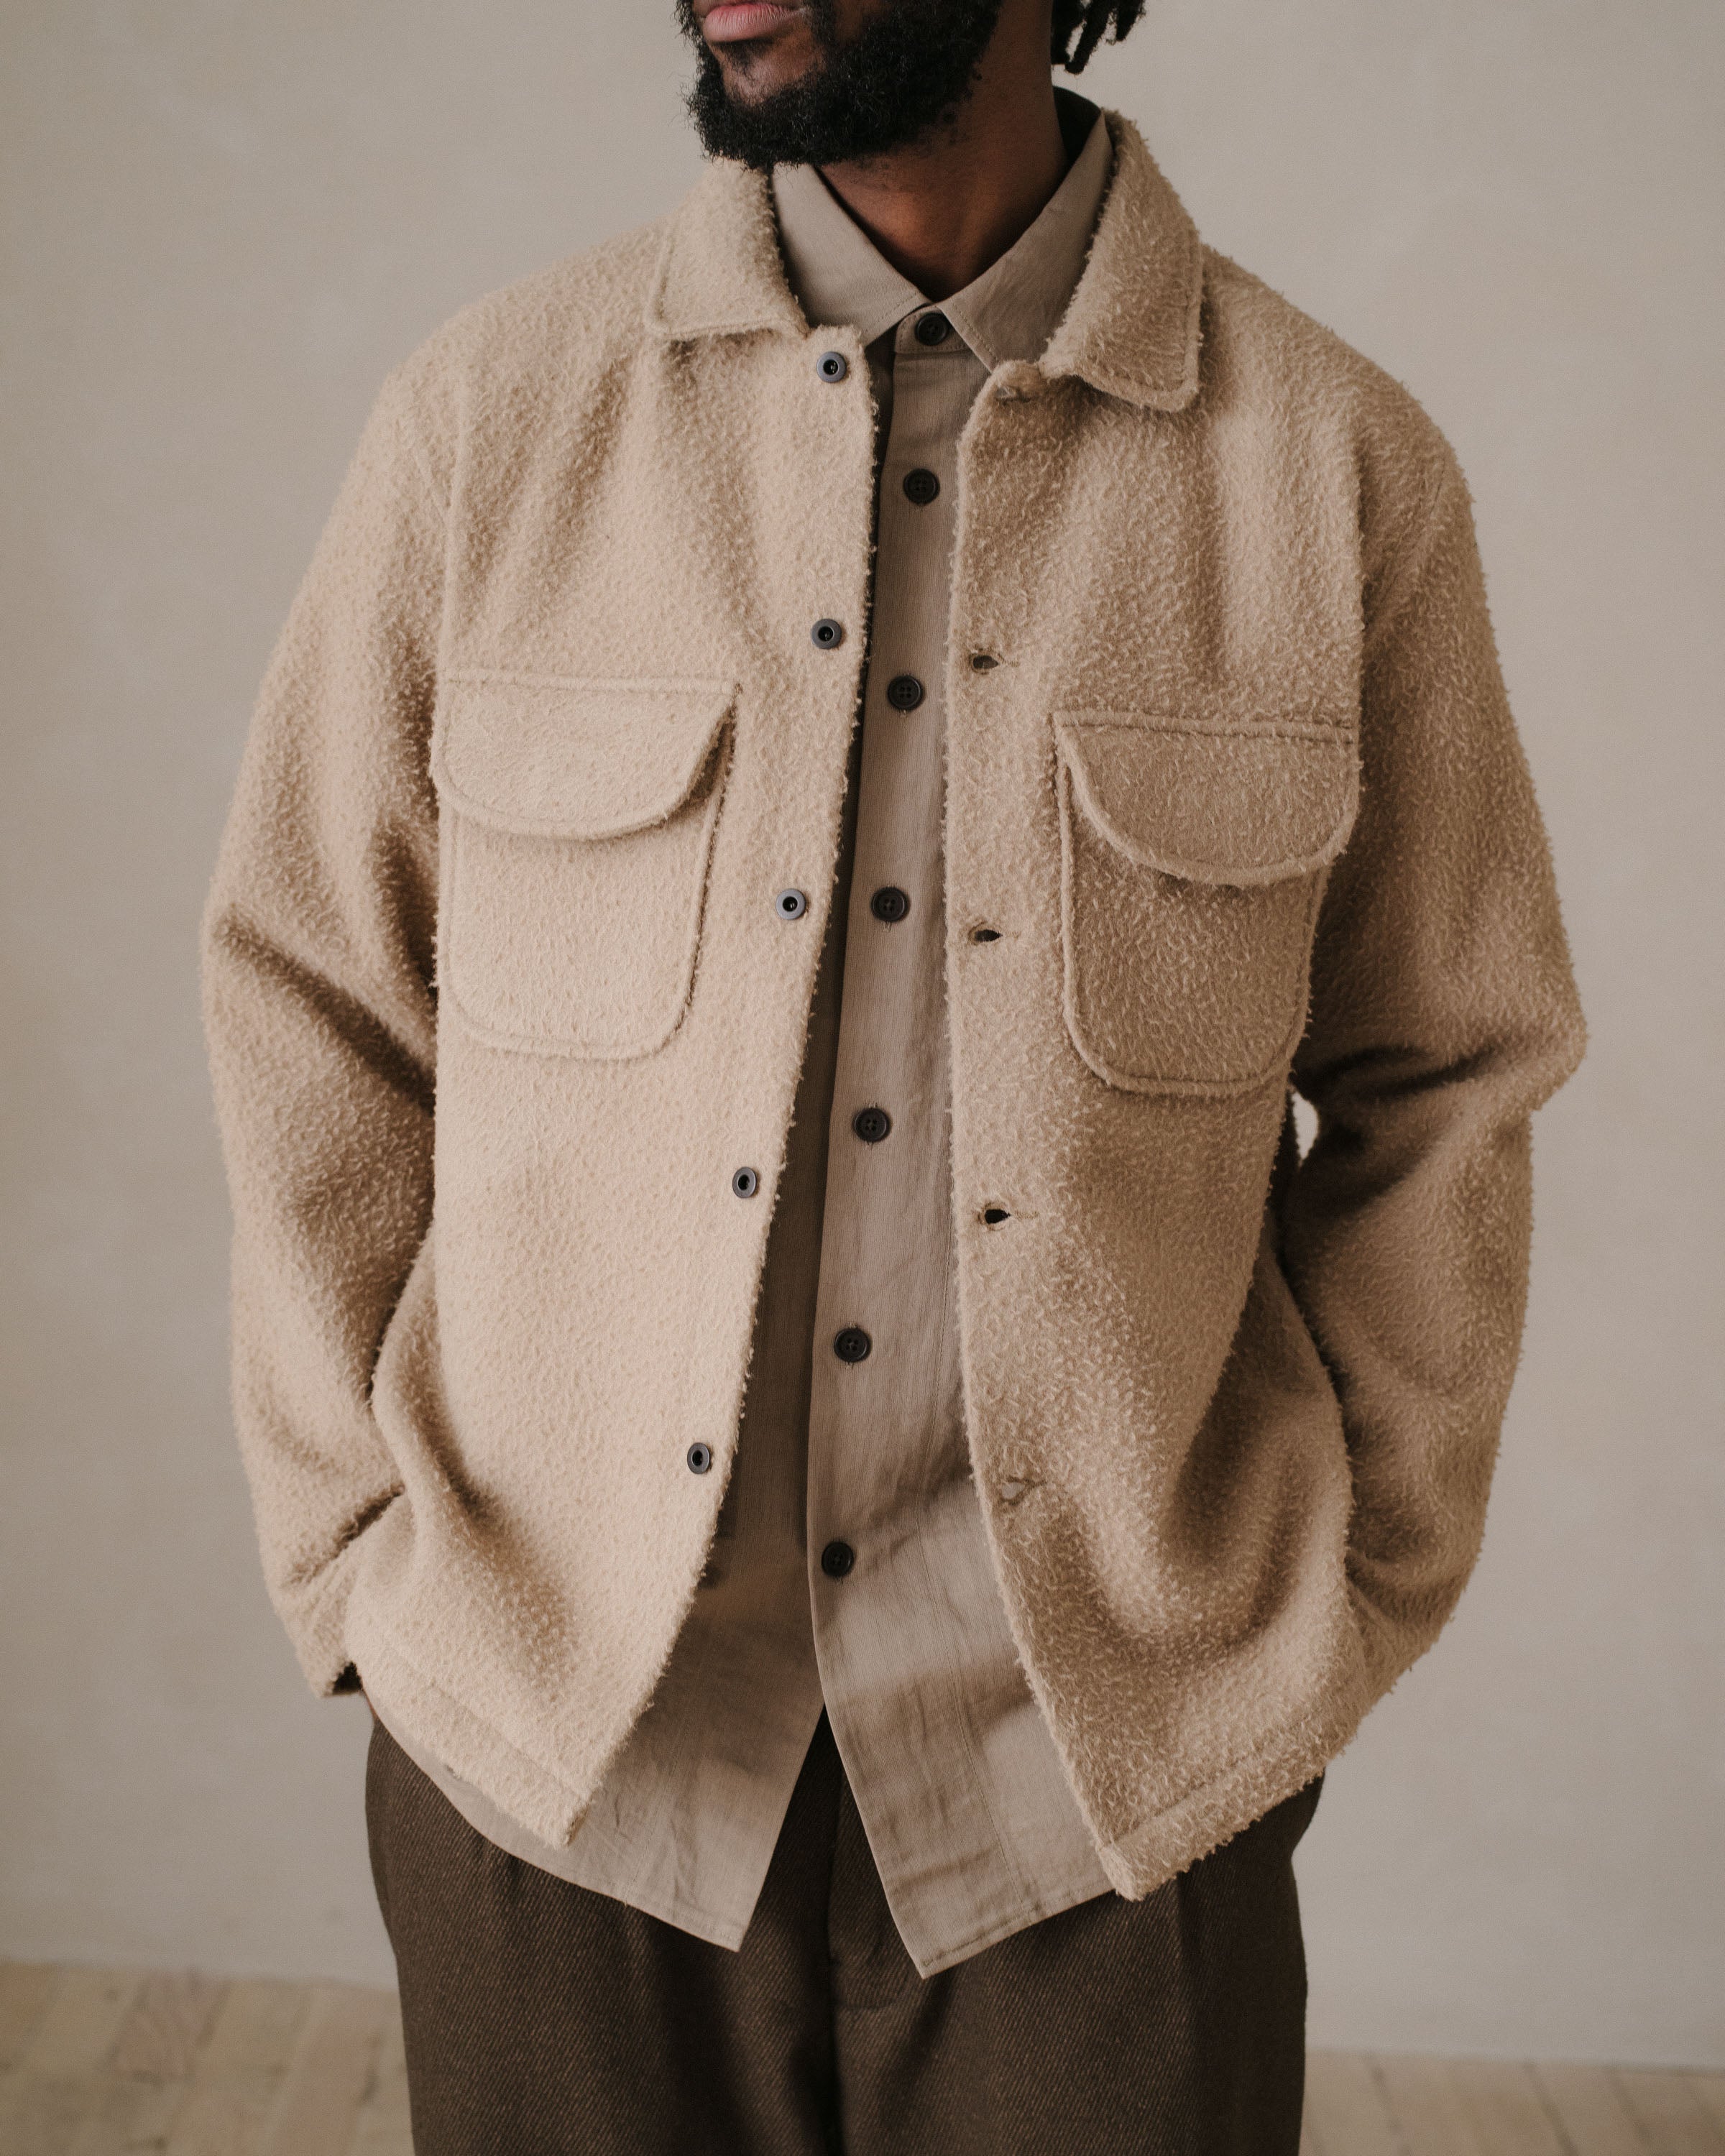 evan kinori / field shirt / S - gray - ファッション